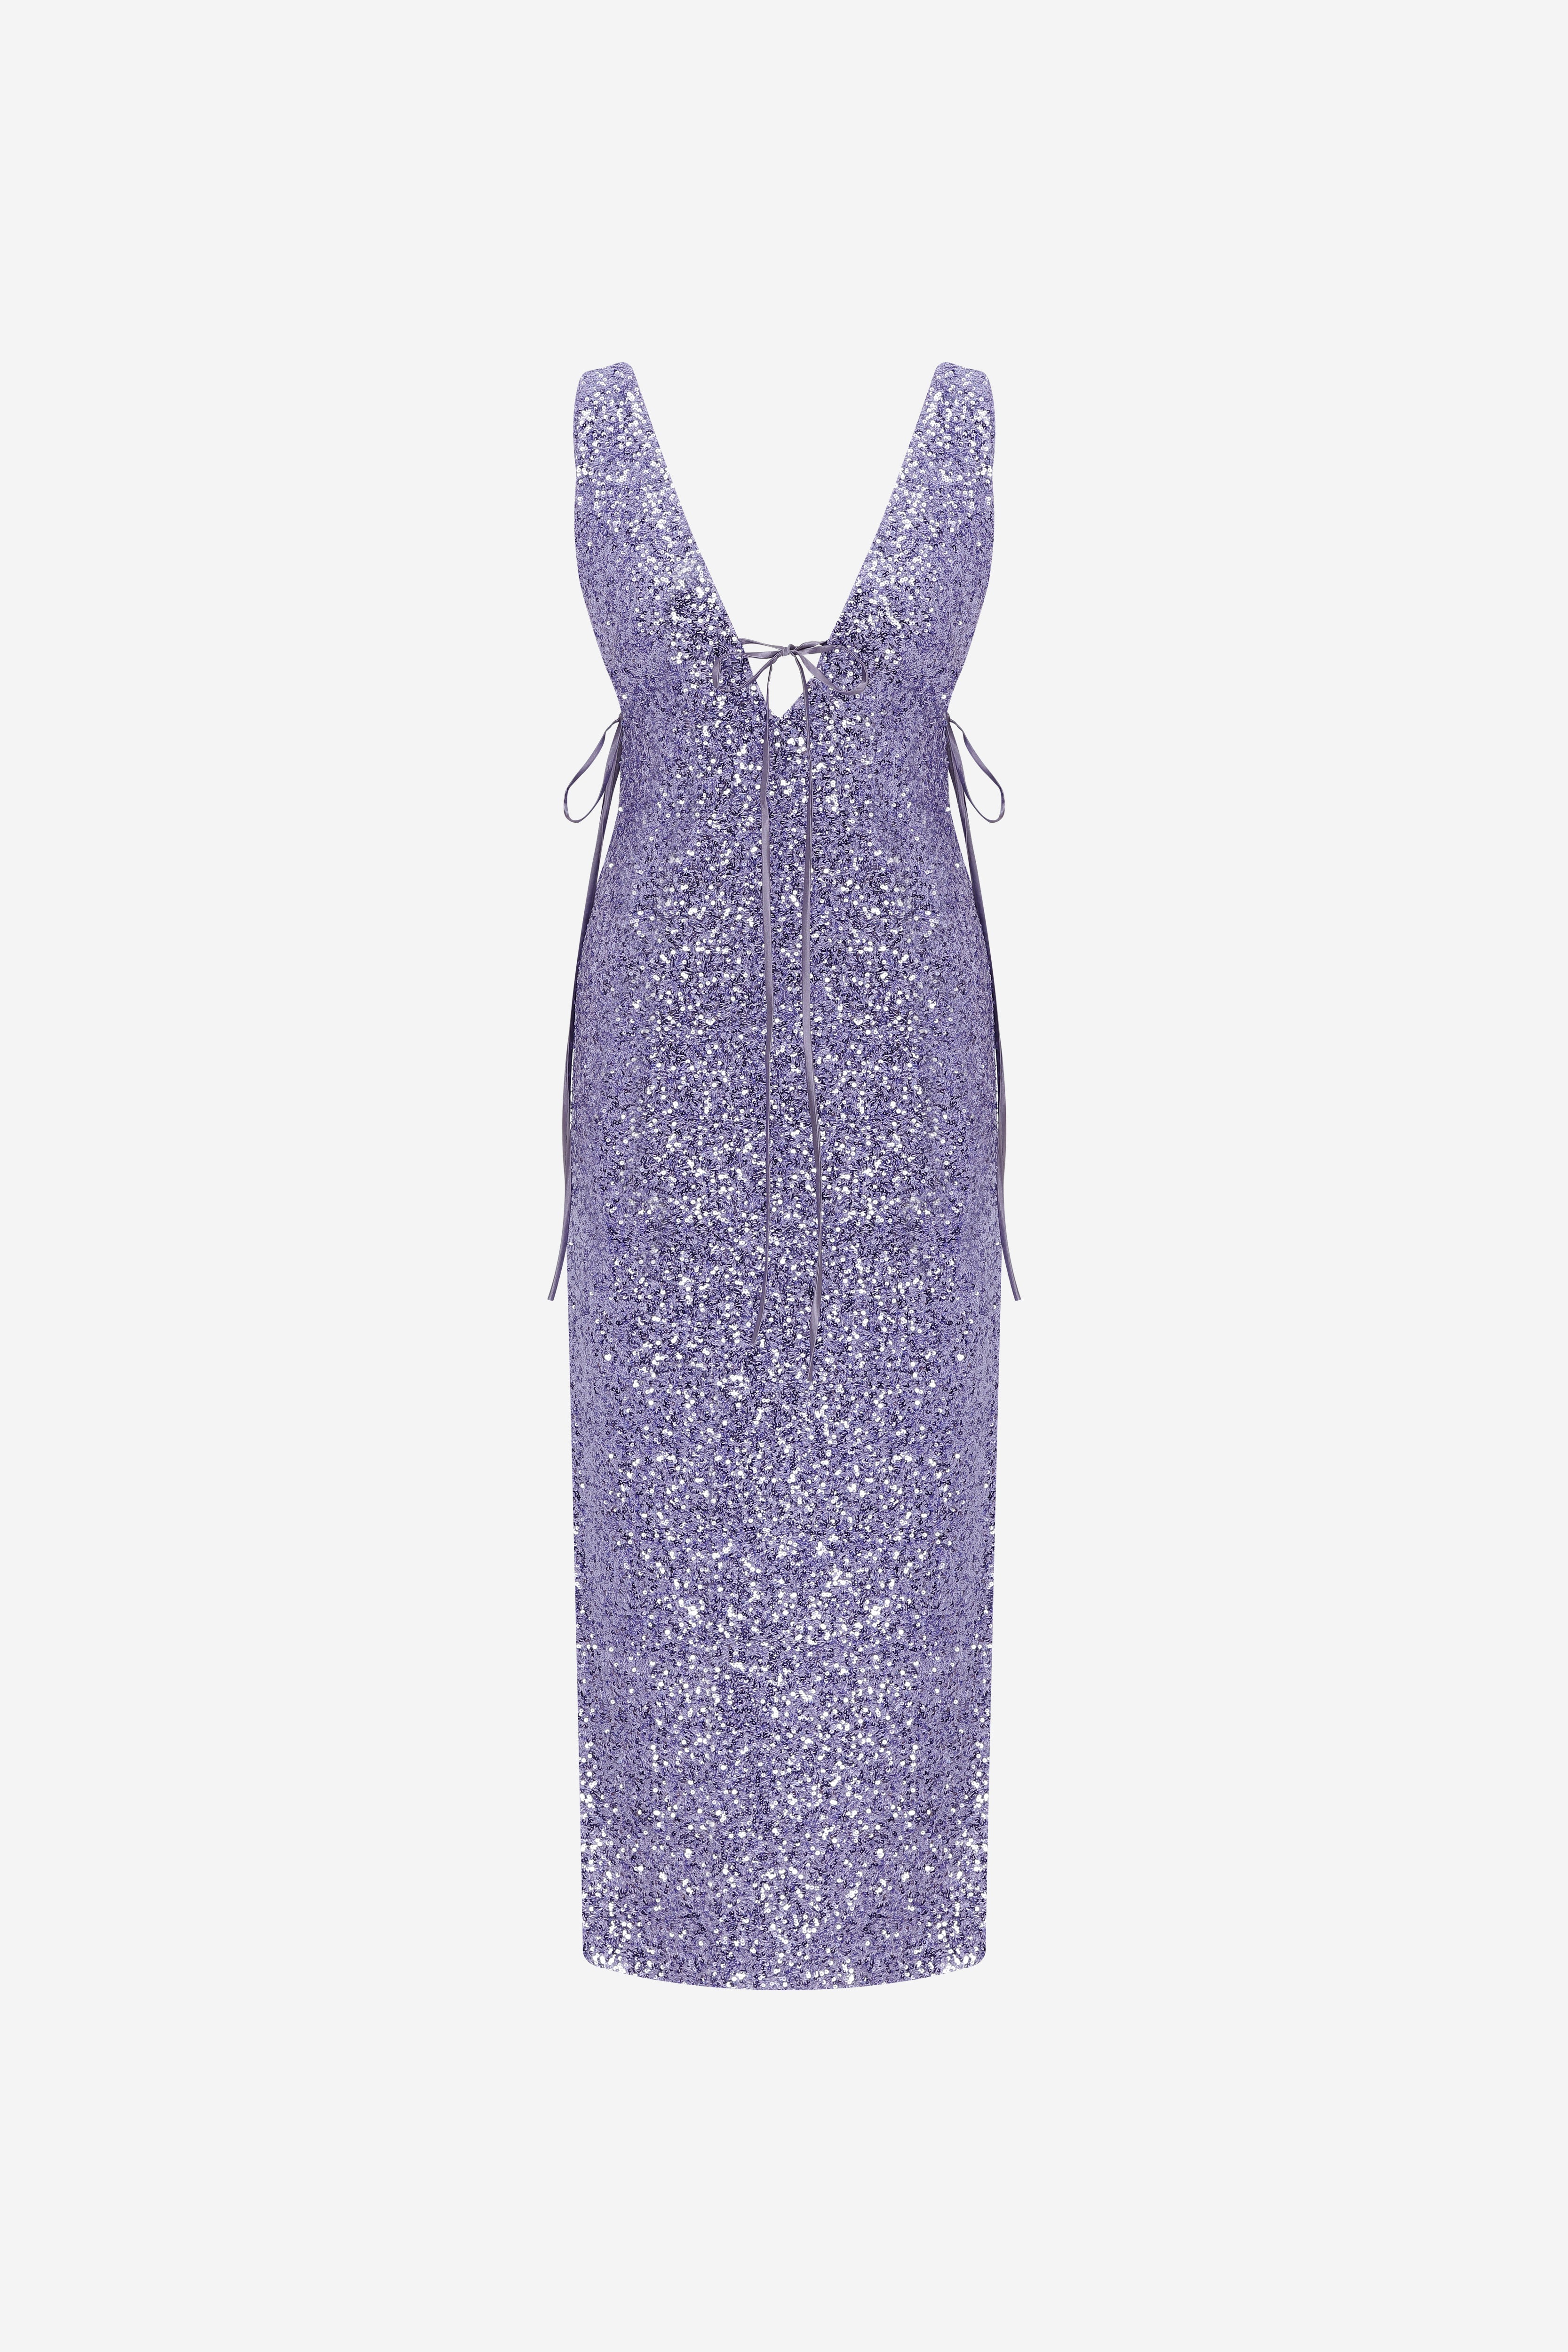 Stevie - V Neck Midi Sequin Dress in Lilac